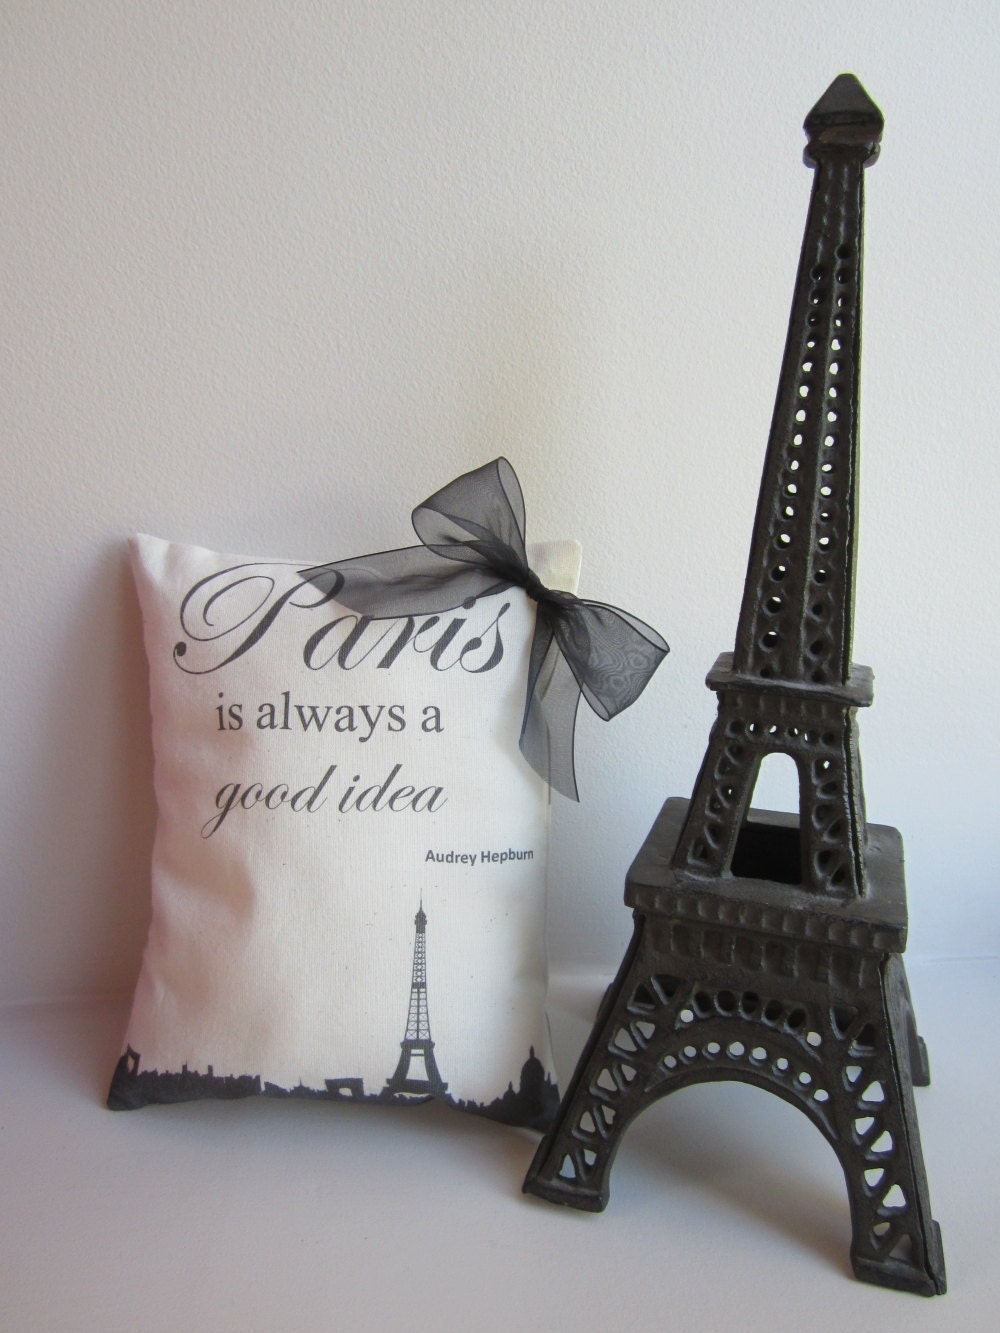 Париж всегда хорошая идея - Мини-декоративные подушки - Париж Cityscape - Эйфелева башня - Одри Хепберн Ответить